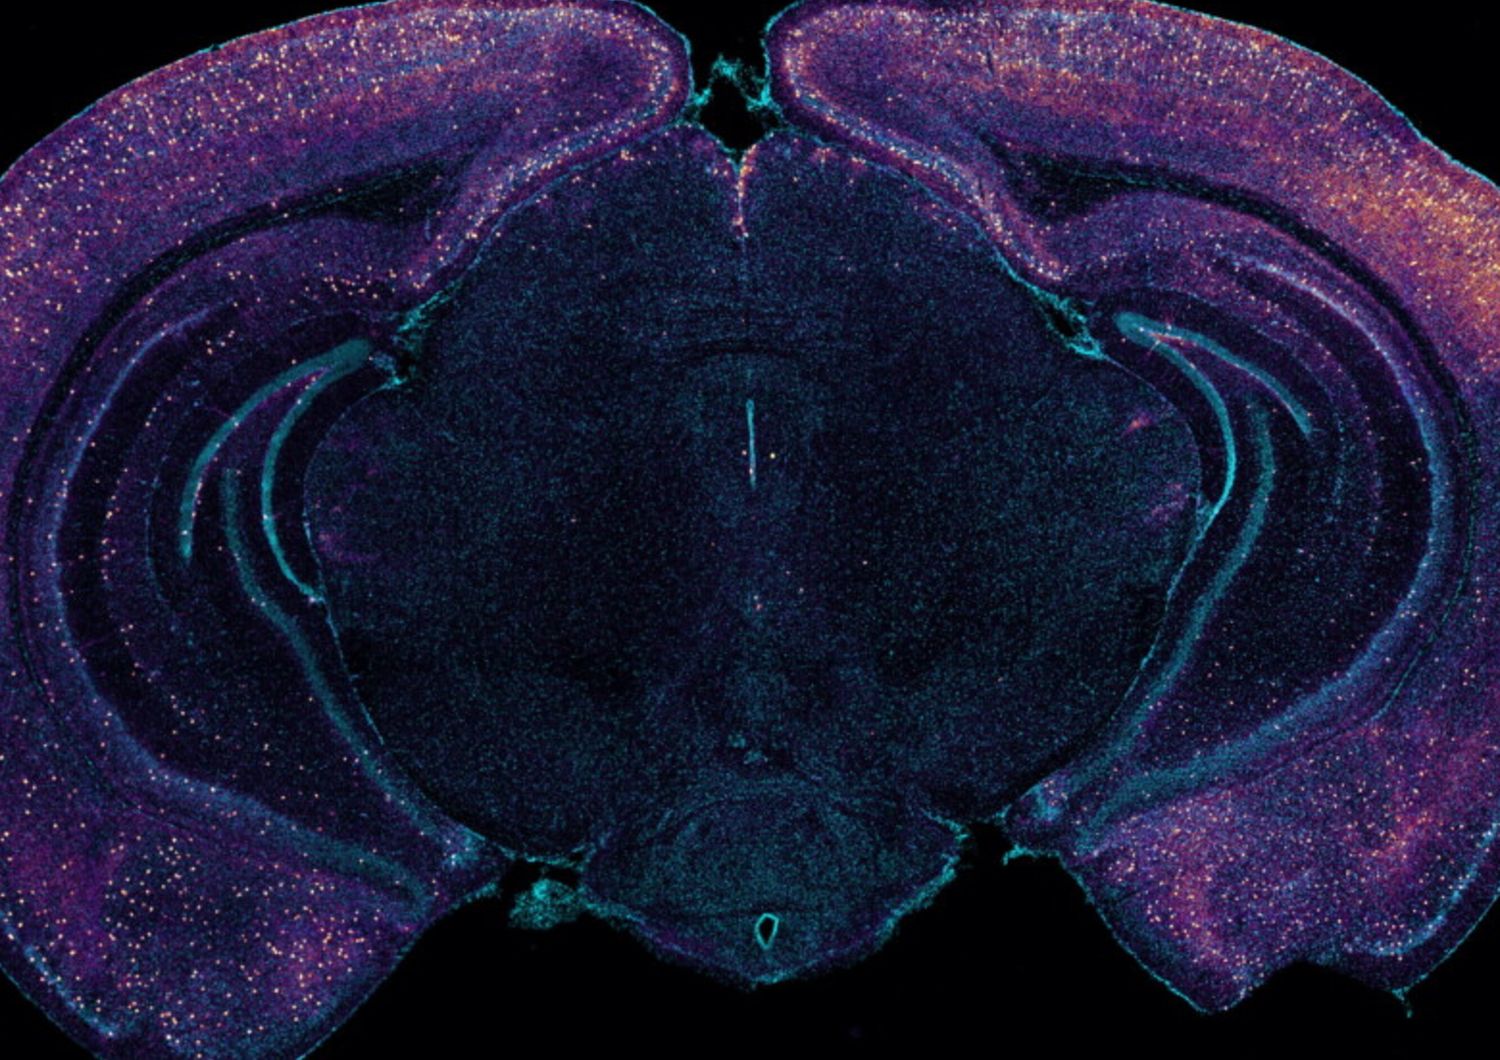 La colorazione brillante evidenzia gli interneuroni che esprimono VIP in questa sezione trasversale coronale di un cervello di topo